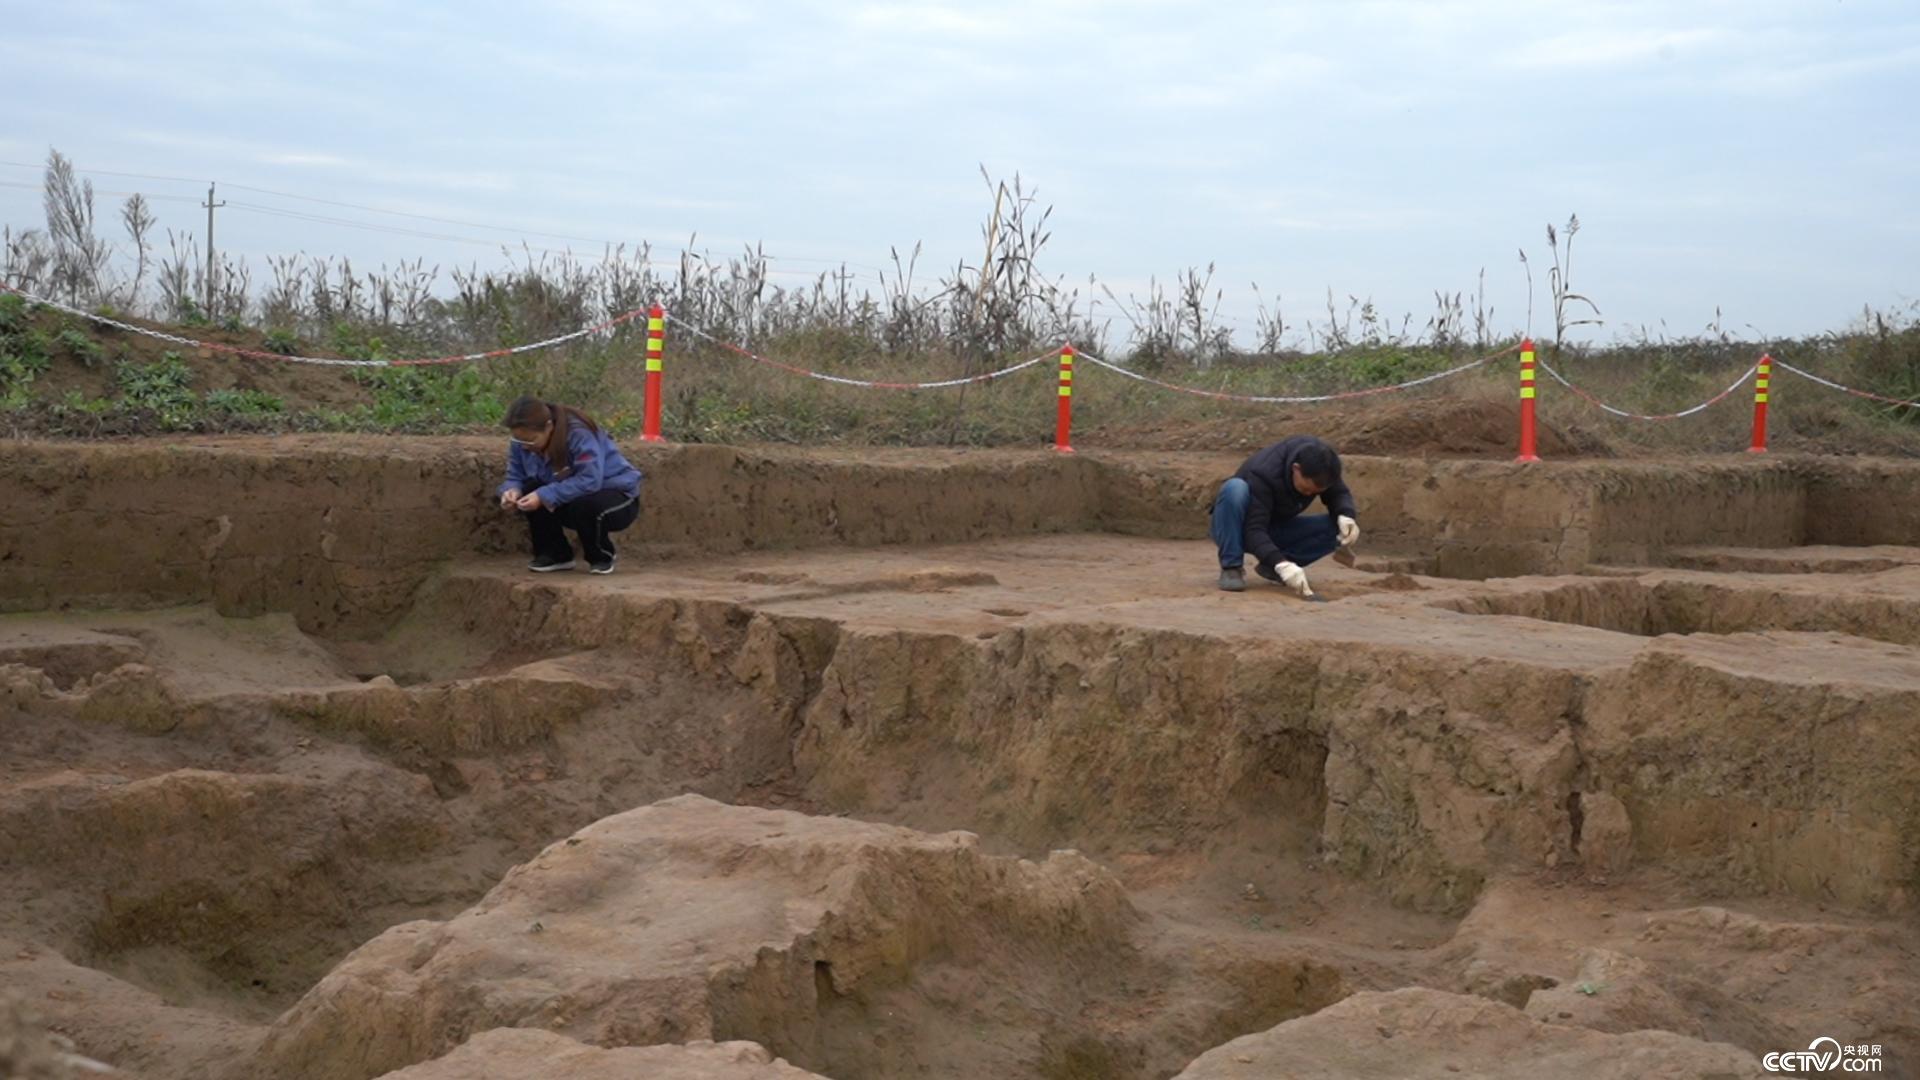 在宫殿区西侧,考古队员意外发现了咸阳宫的府库遗址